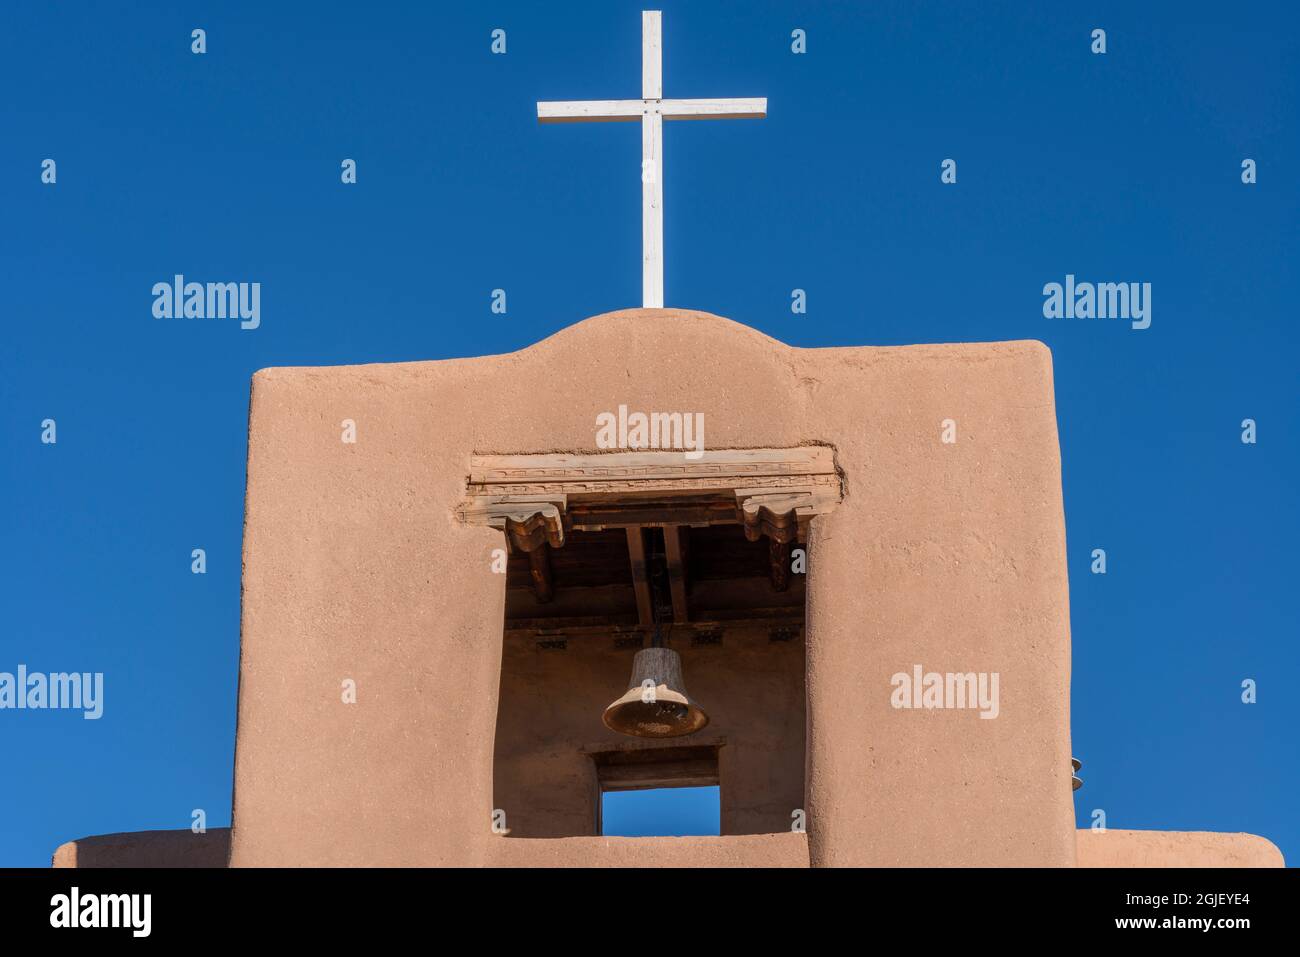 USA, New Mexico. Santa Fe, missione di San Miguel, questa missione coloniale spagnola costruita intorno al 1620 è la chiesa più antica conosciuta negli Stati Uniti continentali. Foto Stock